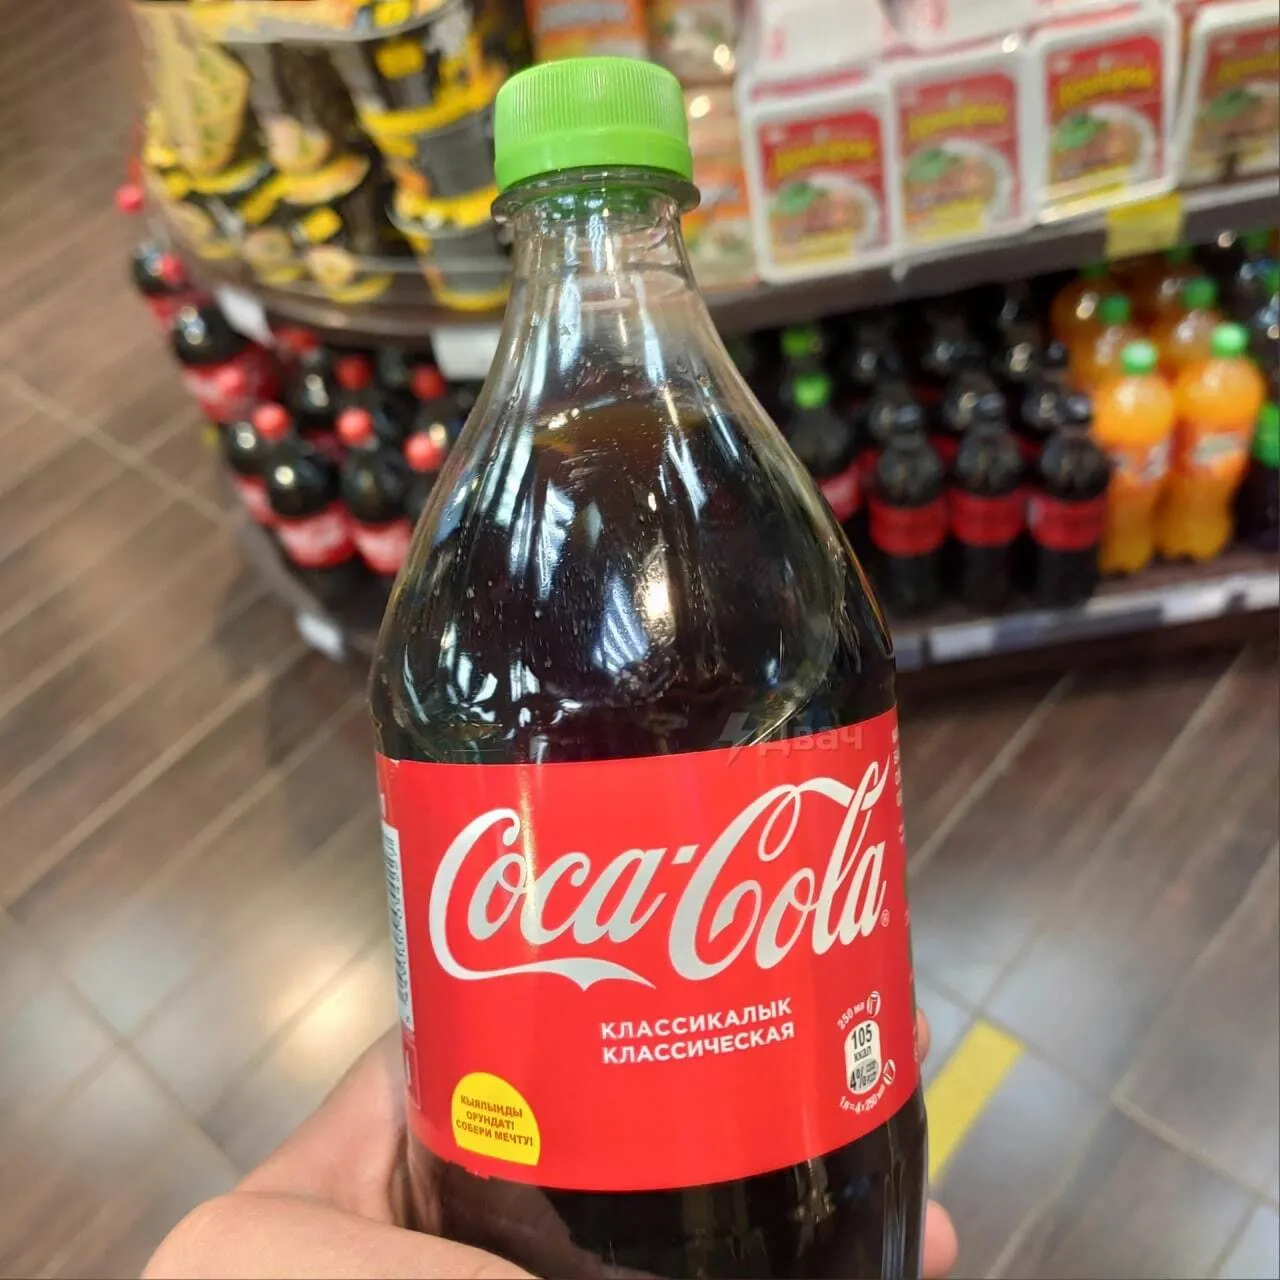      Coca-Cola qhiqquiqkdiqeqroz